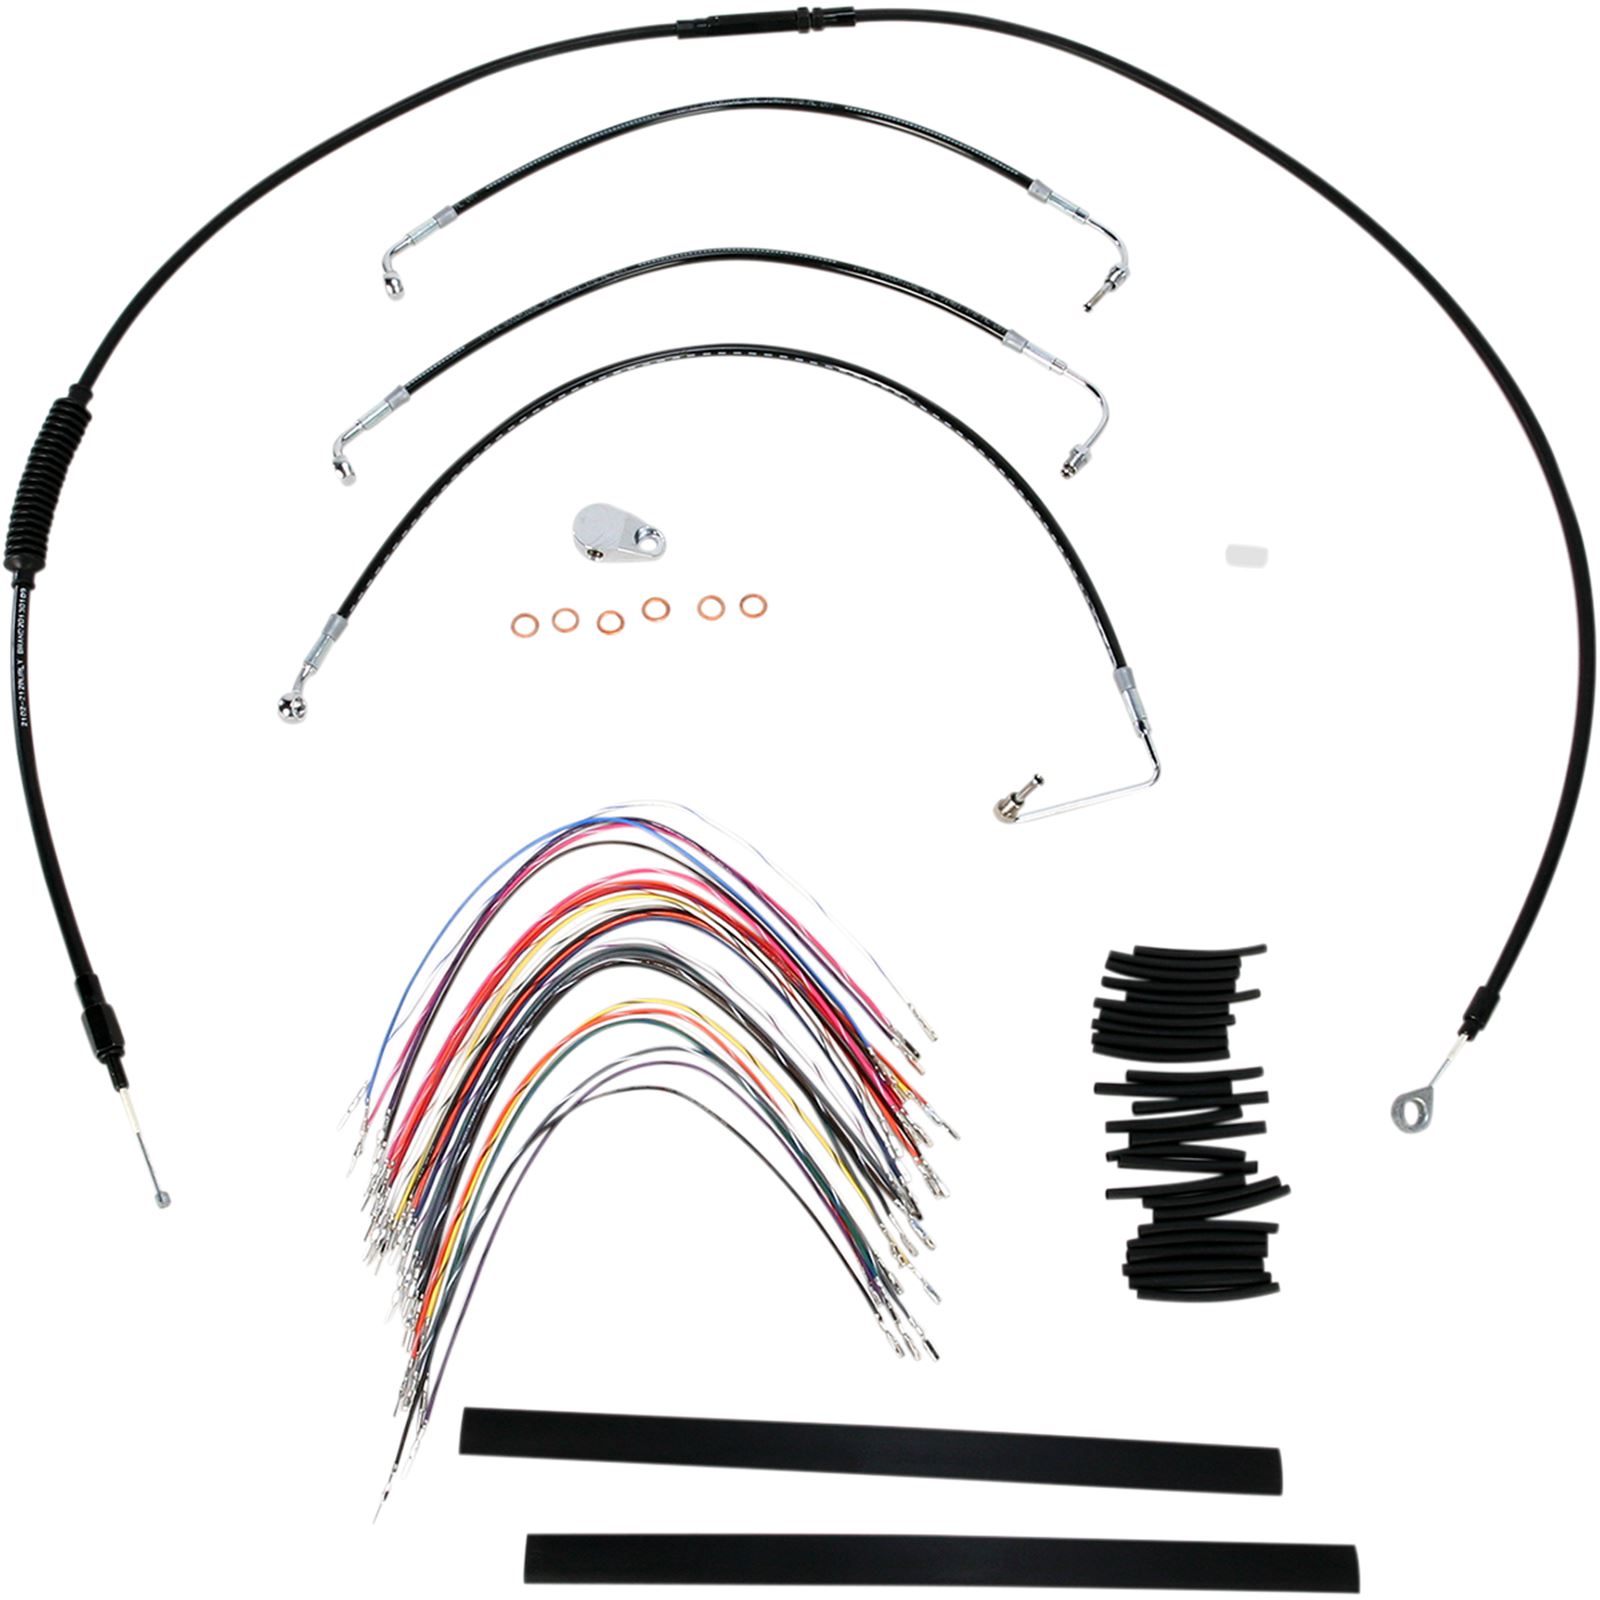 Burly Brand Complete Black Vinyl Handlebar Cable/Brake Line Kit For 13" Ape Hanger Handlebars